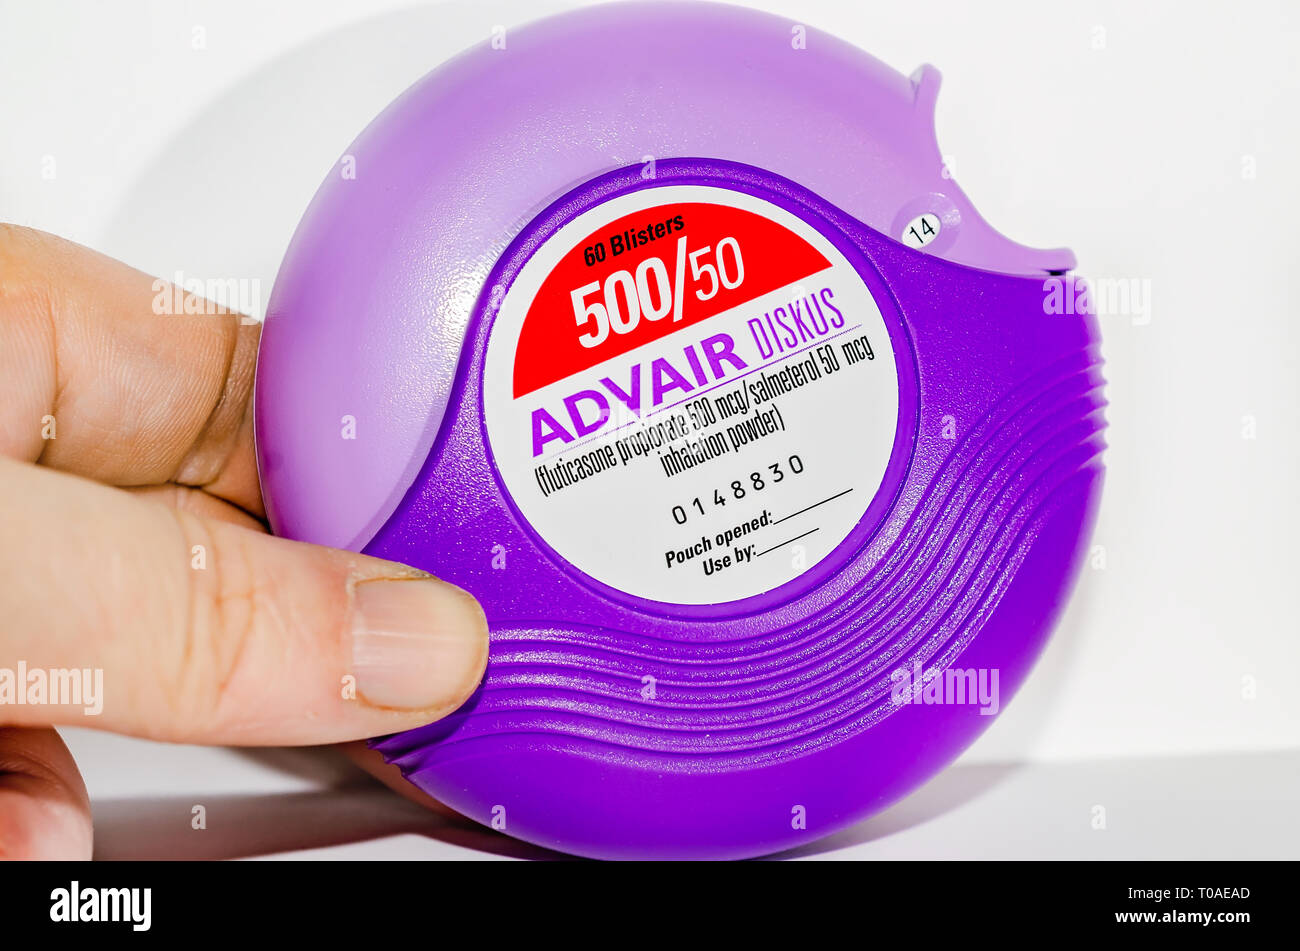 El Advair Diskus inhalador, realizados por GlaxoSmithKline​, es retratada en blanco. Los ingredientes activos en Advair son propionato de fluticasona y salmeterol. Foto de stock